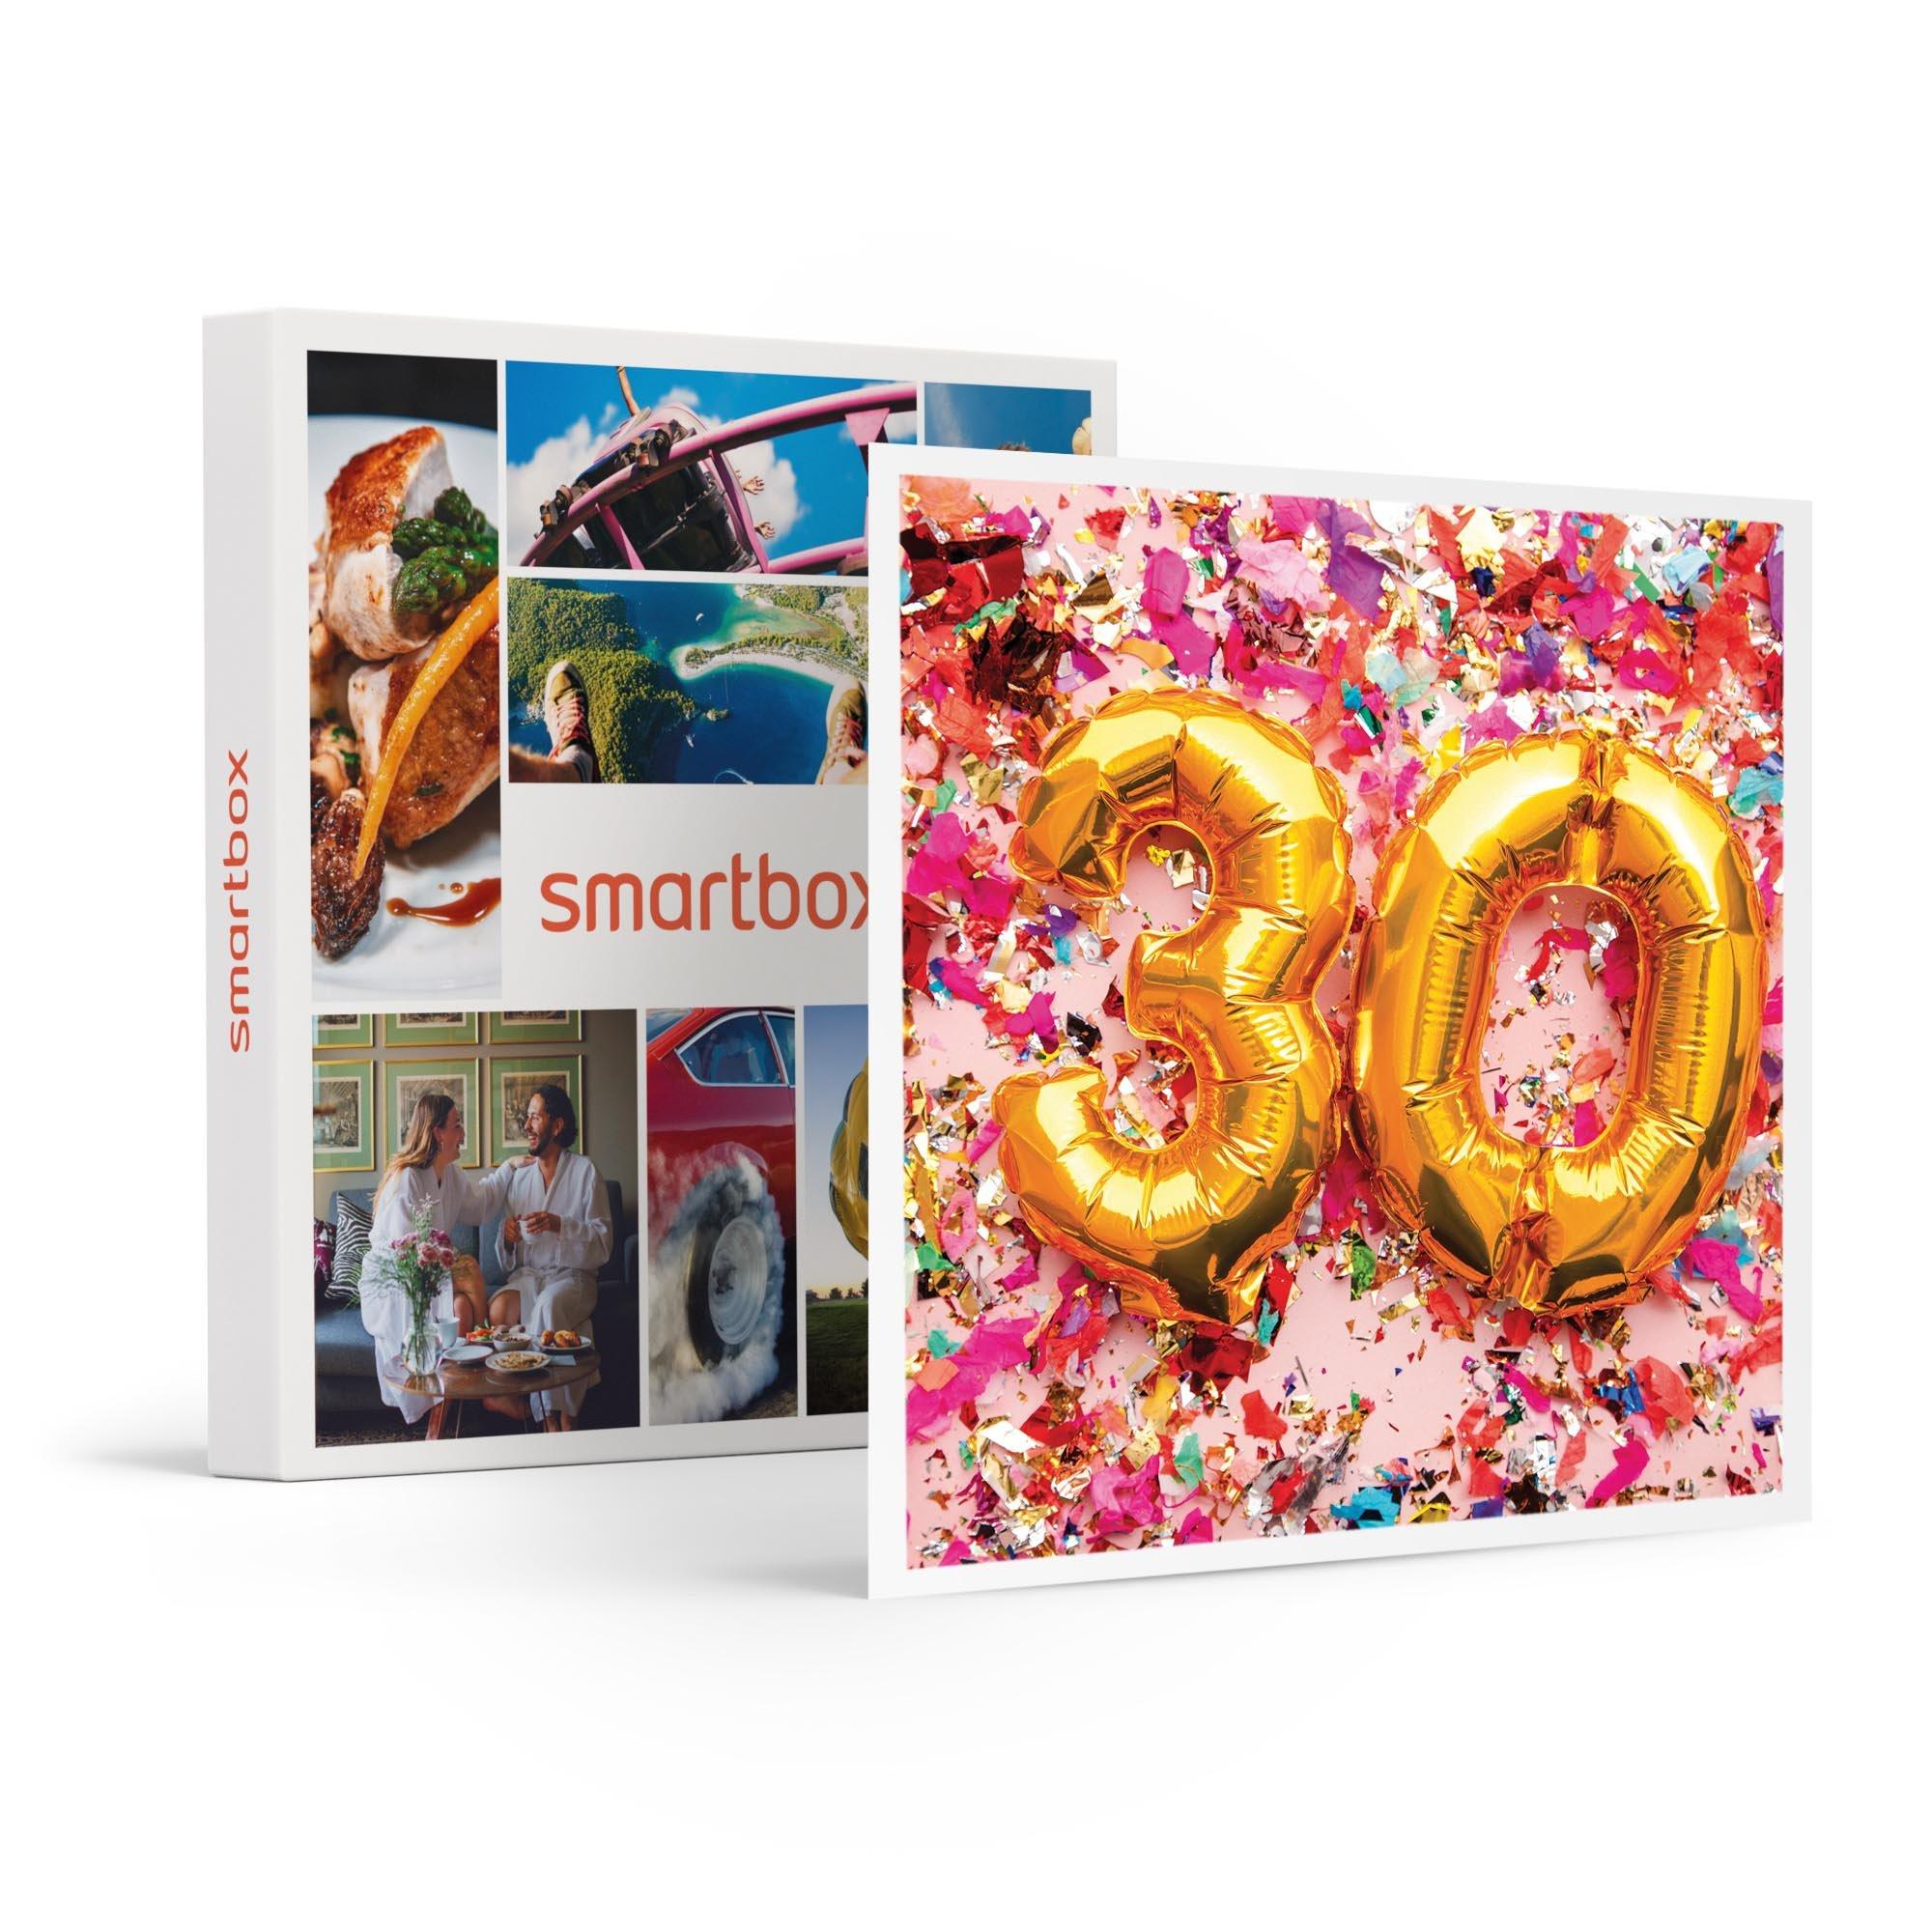 Smartbox  Coffret anniversaire 30 ans : séjour en Europe, souper gastronomique ou aventure - Coffret Cadeau 